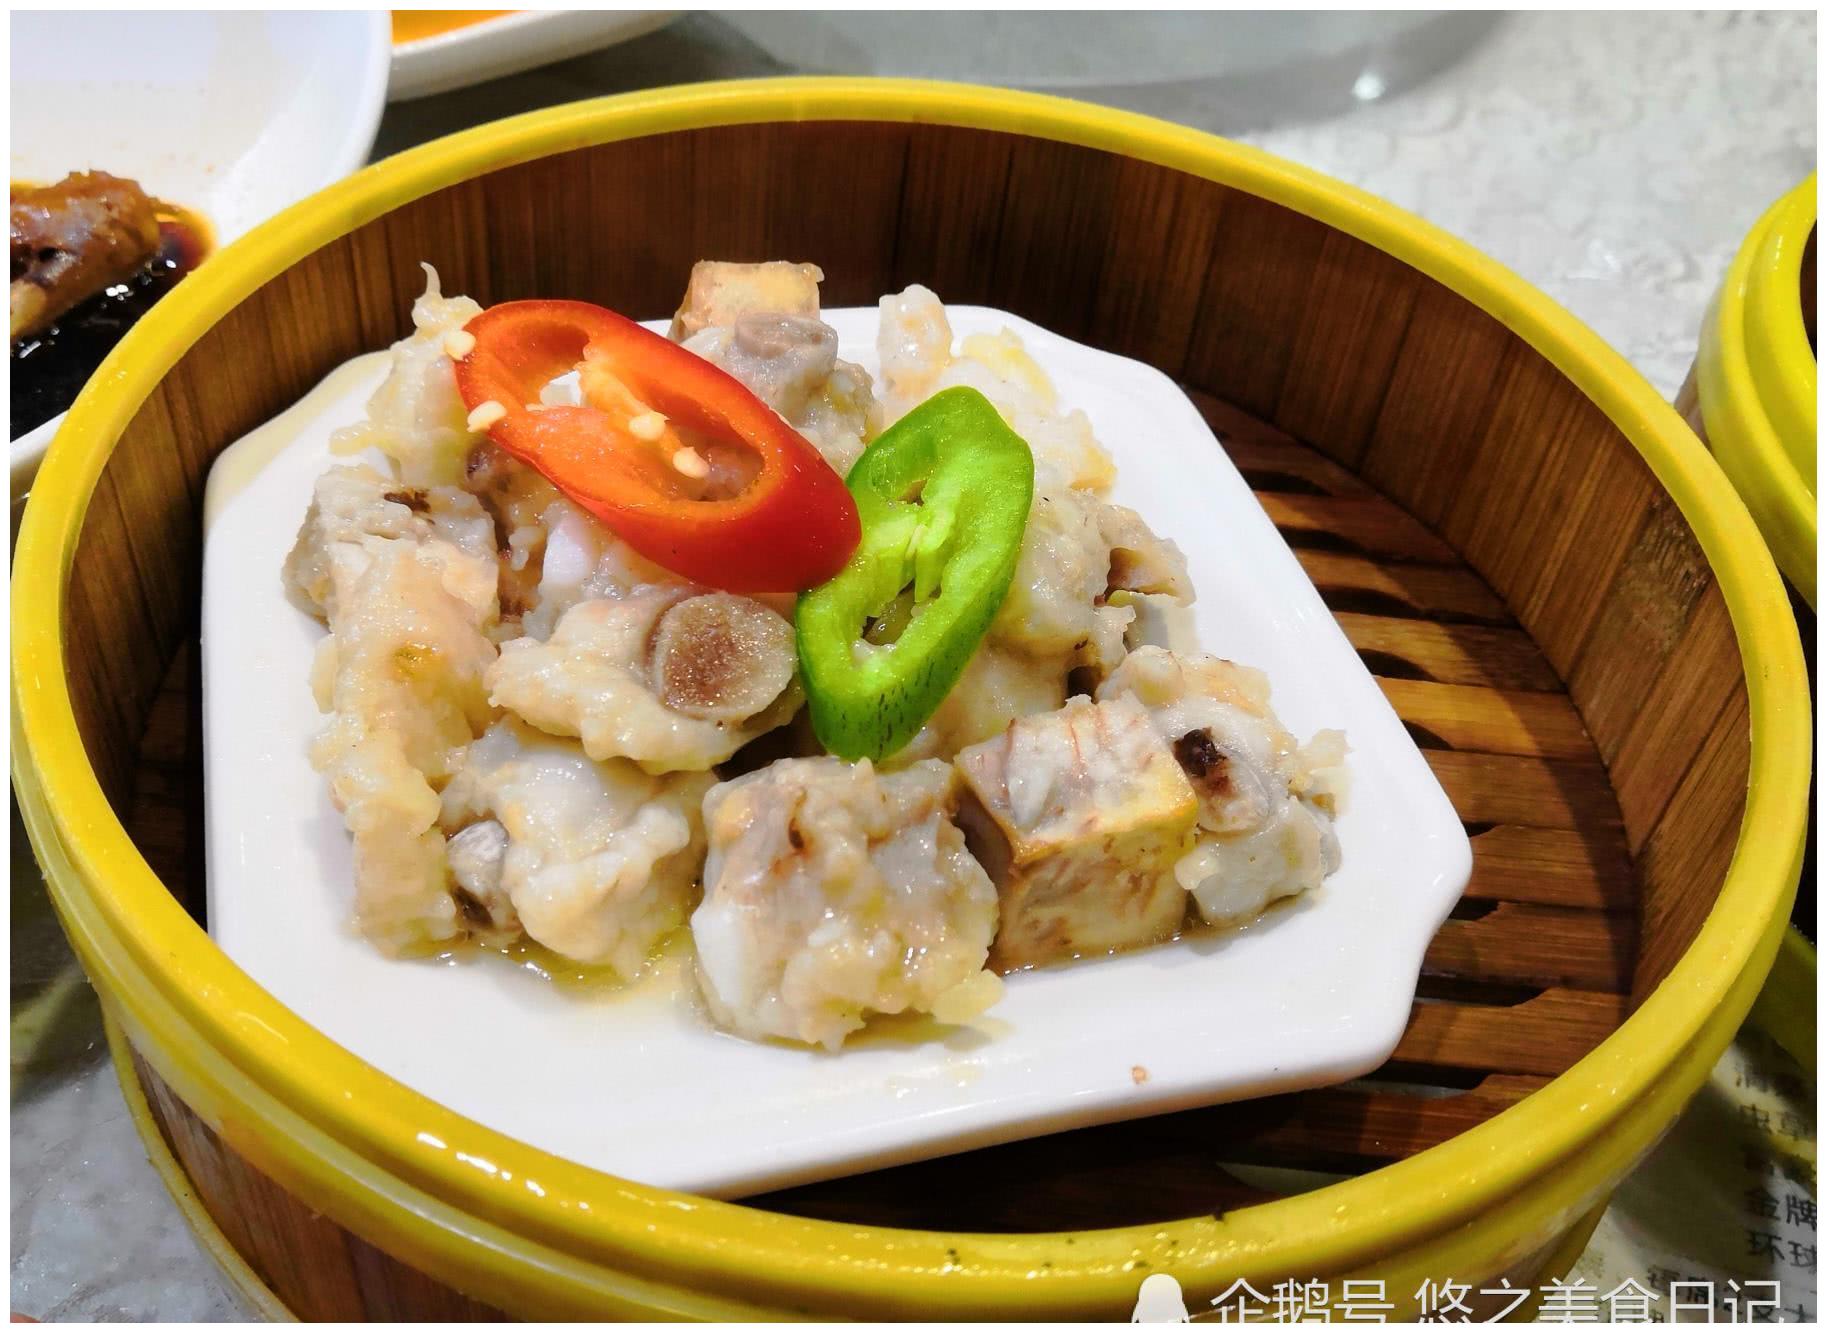 【芋头蒸排骨】也是粤式酒楼里的常菜,芋头粉粉的,排骨蒸得嫩嫩的,吃